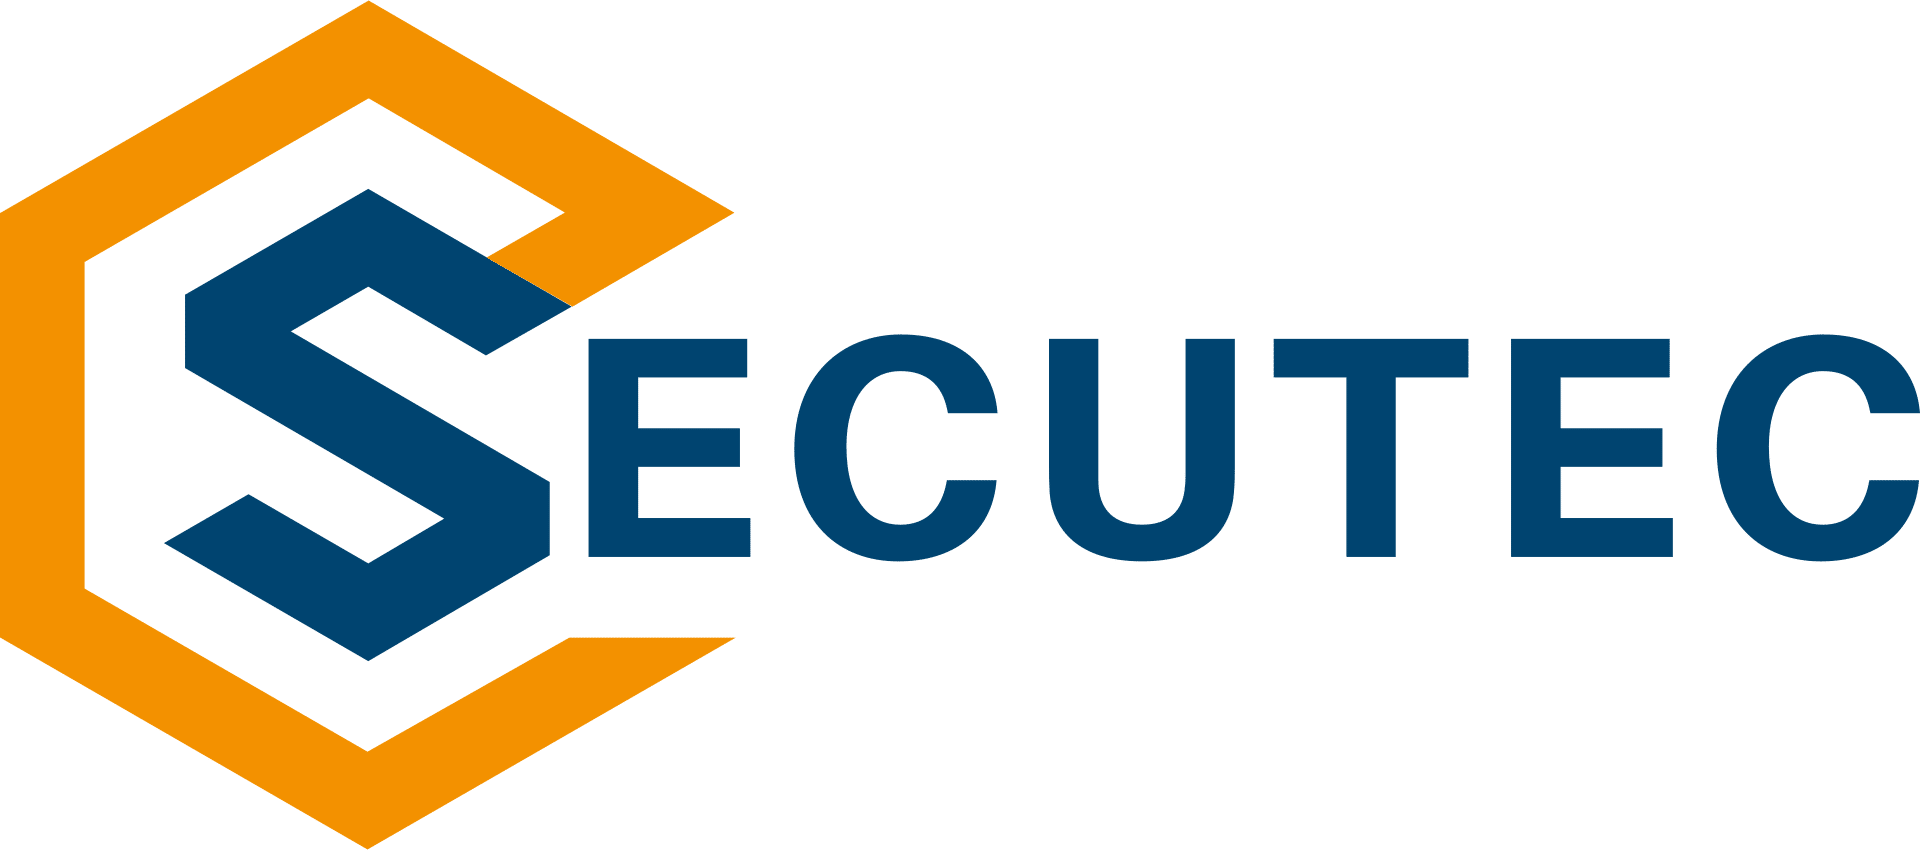 SecuTec Logo Schrift 1920 - Alle Mitglieder